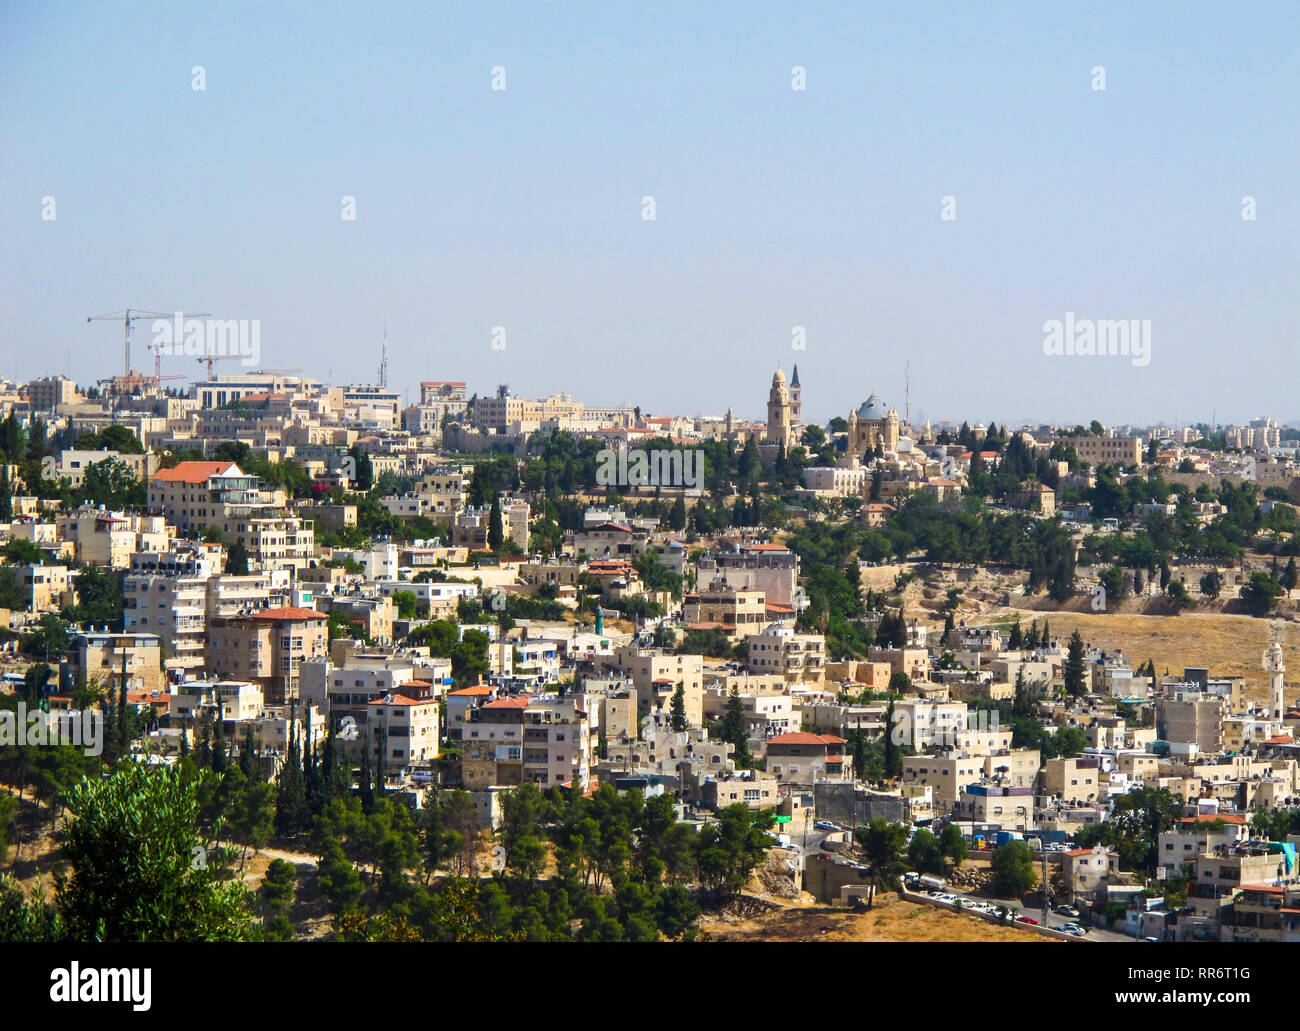 Vue panoramique de Jérusalem et l'Abbaye de la Dormition sur le Mont Sion du Mont des Oliviers. Jérusalem, Israël. Juin 2014 Banque D'Images